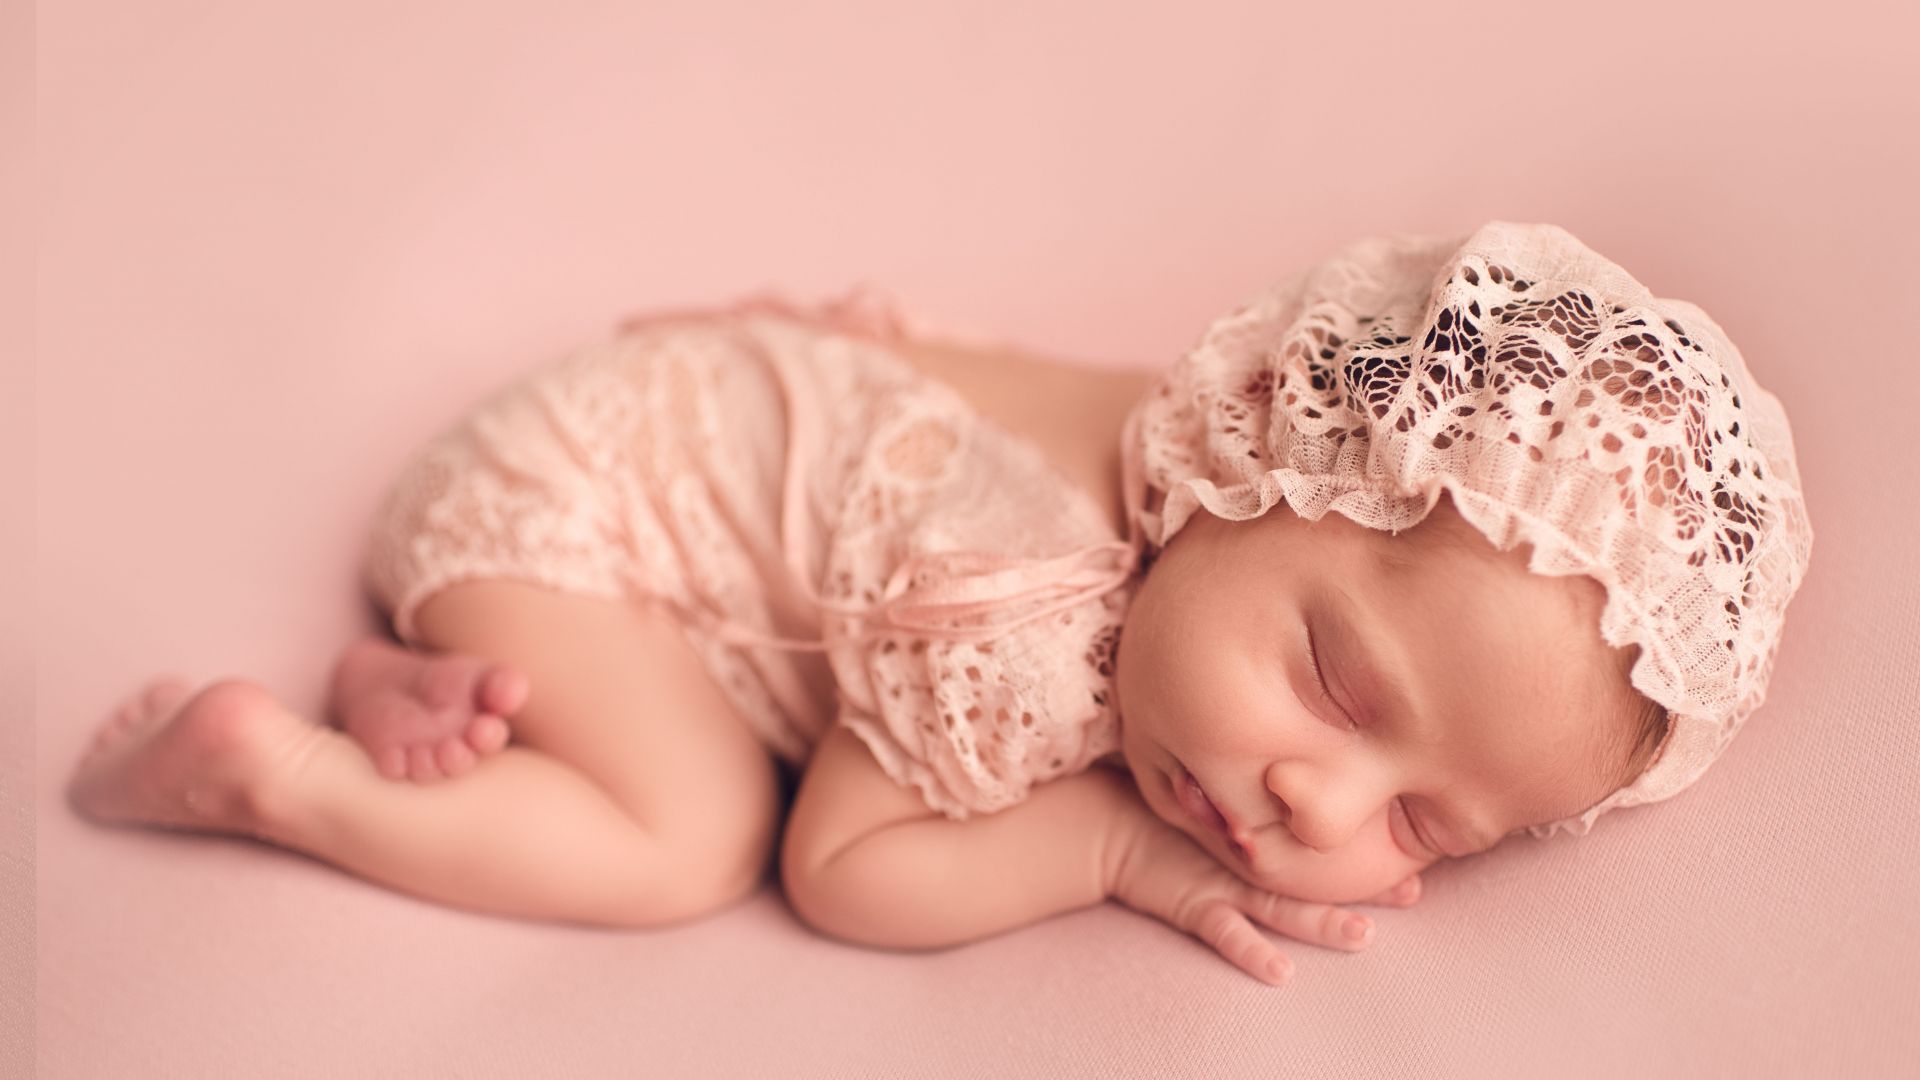 صور اطفال  Sleeping baby Wallpaper  اطفال كيوت جميلة صغار